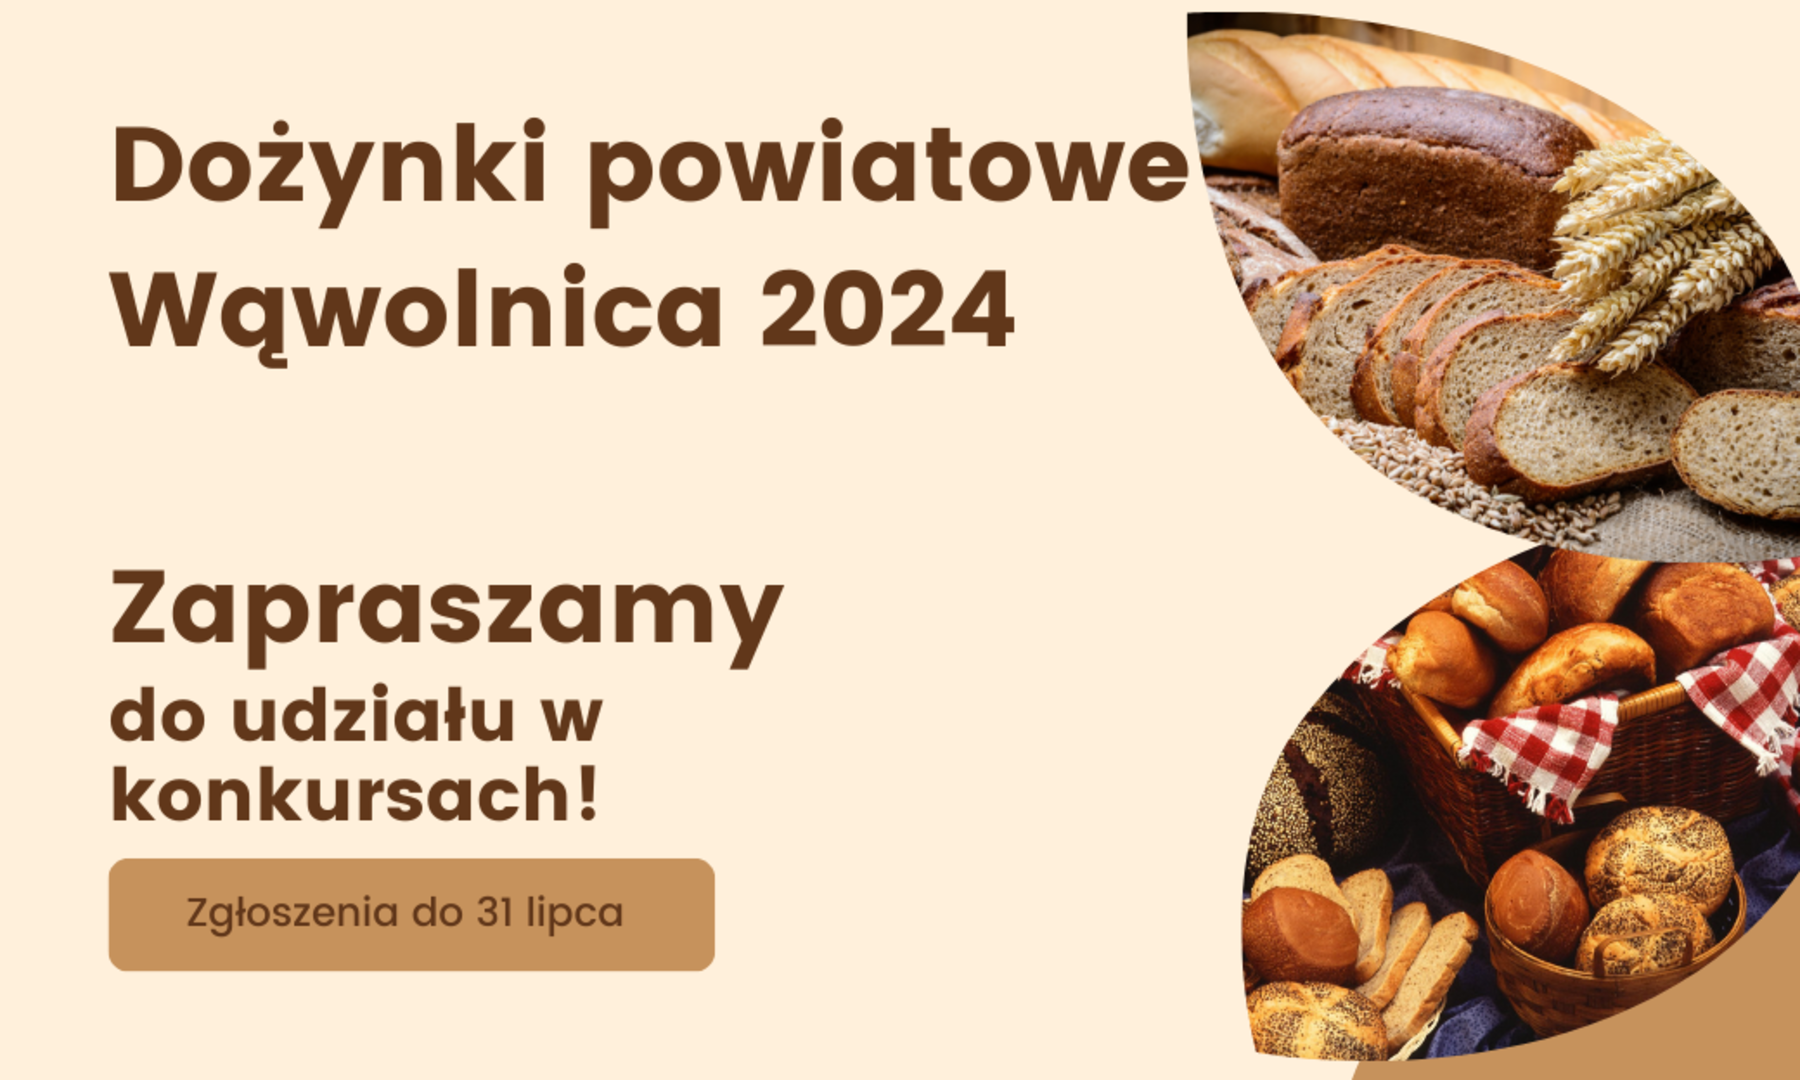 Dożynki powiatowe Wąwolnica 2024 Zapraszamy do udziału w konkursach! Zgłoszenia do 31 lipca